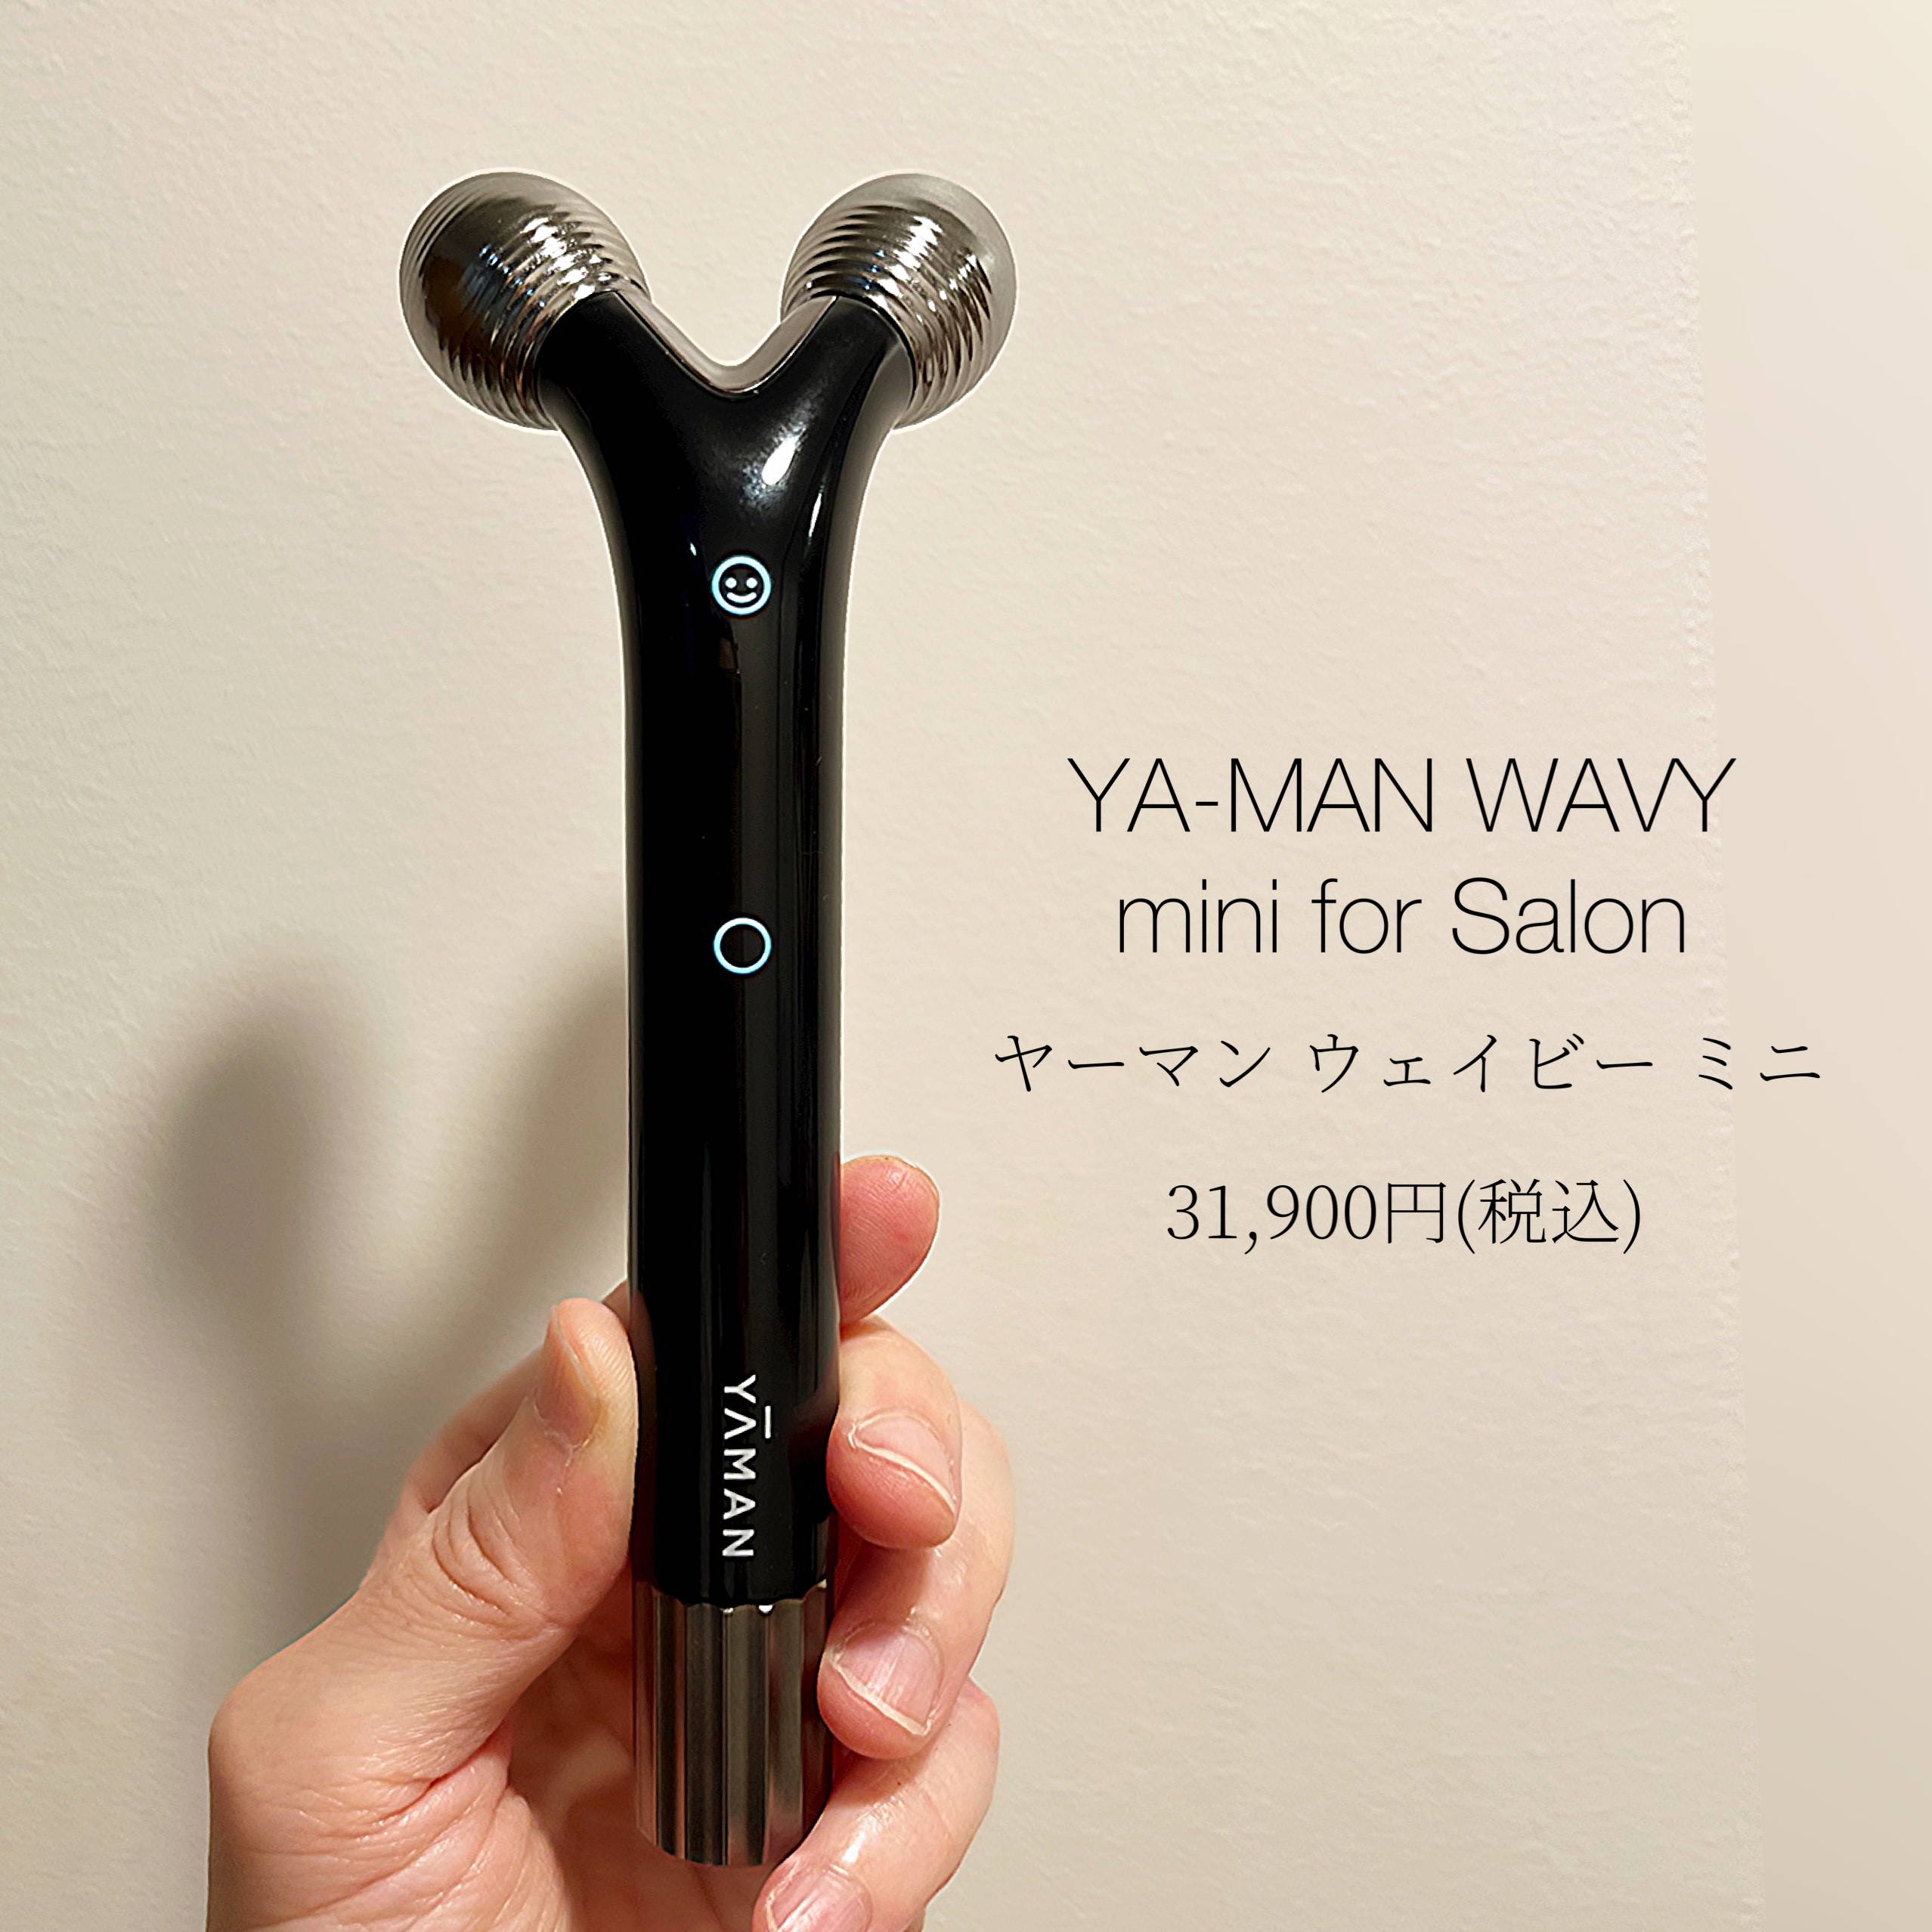 ヤーマン WAVYmini for salon 美顔器 www.krzysztofbialy.com